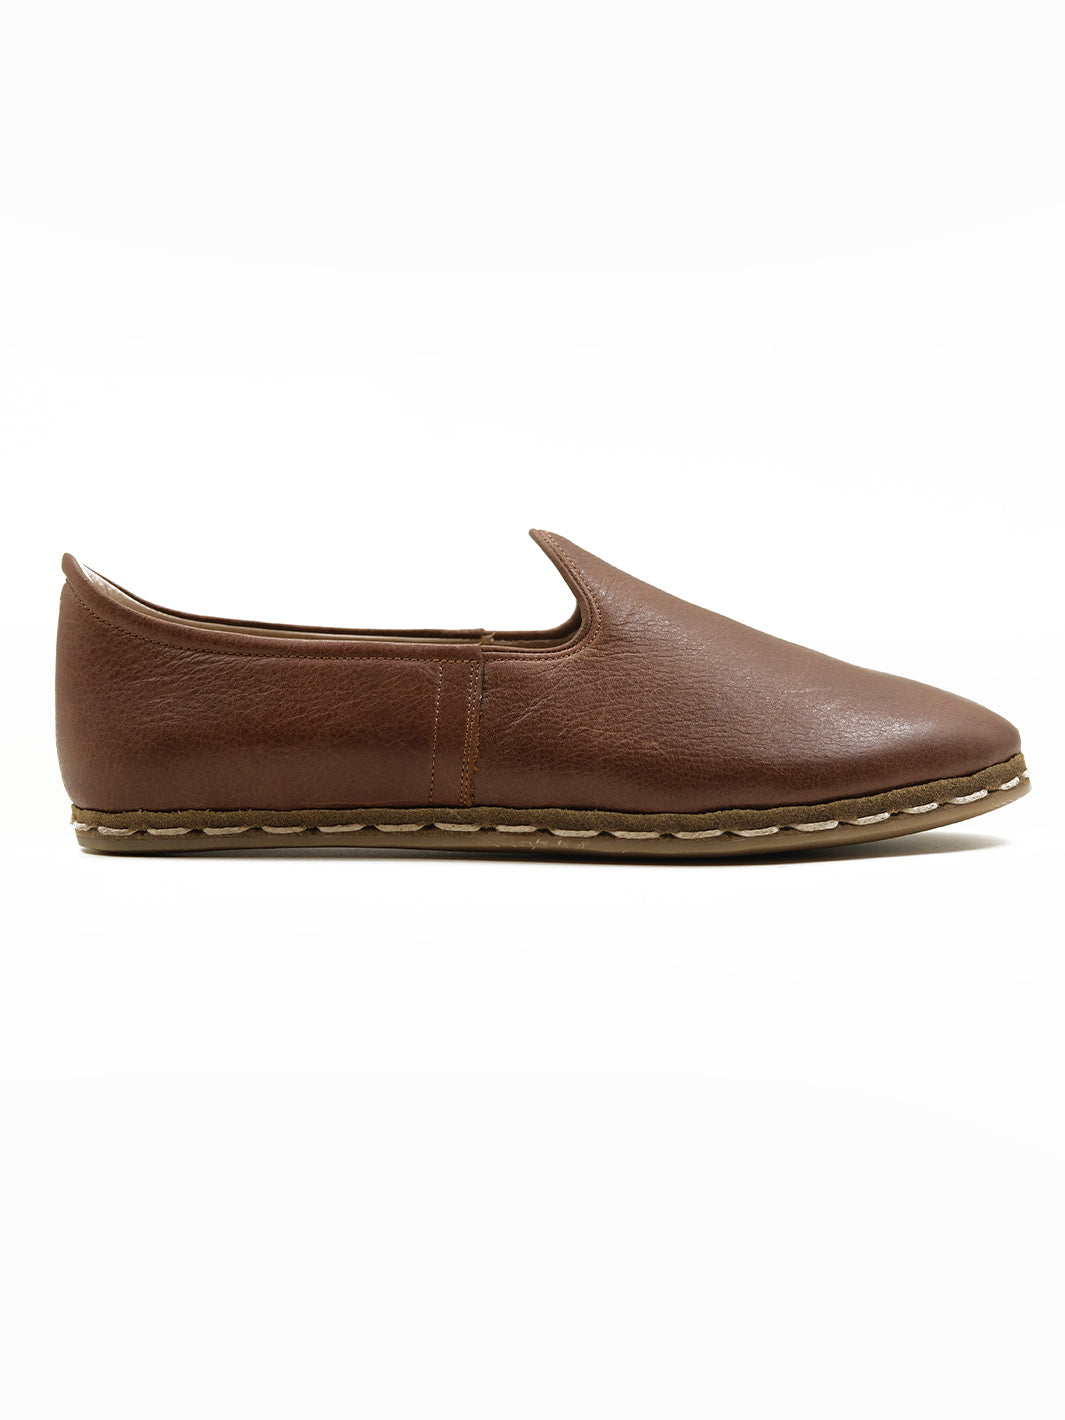 handmade Brown women's slip on shoes